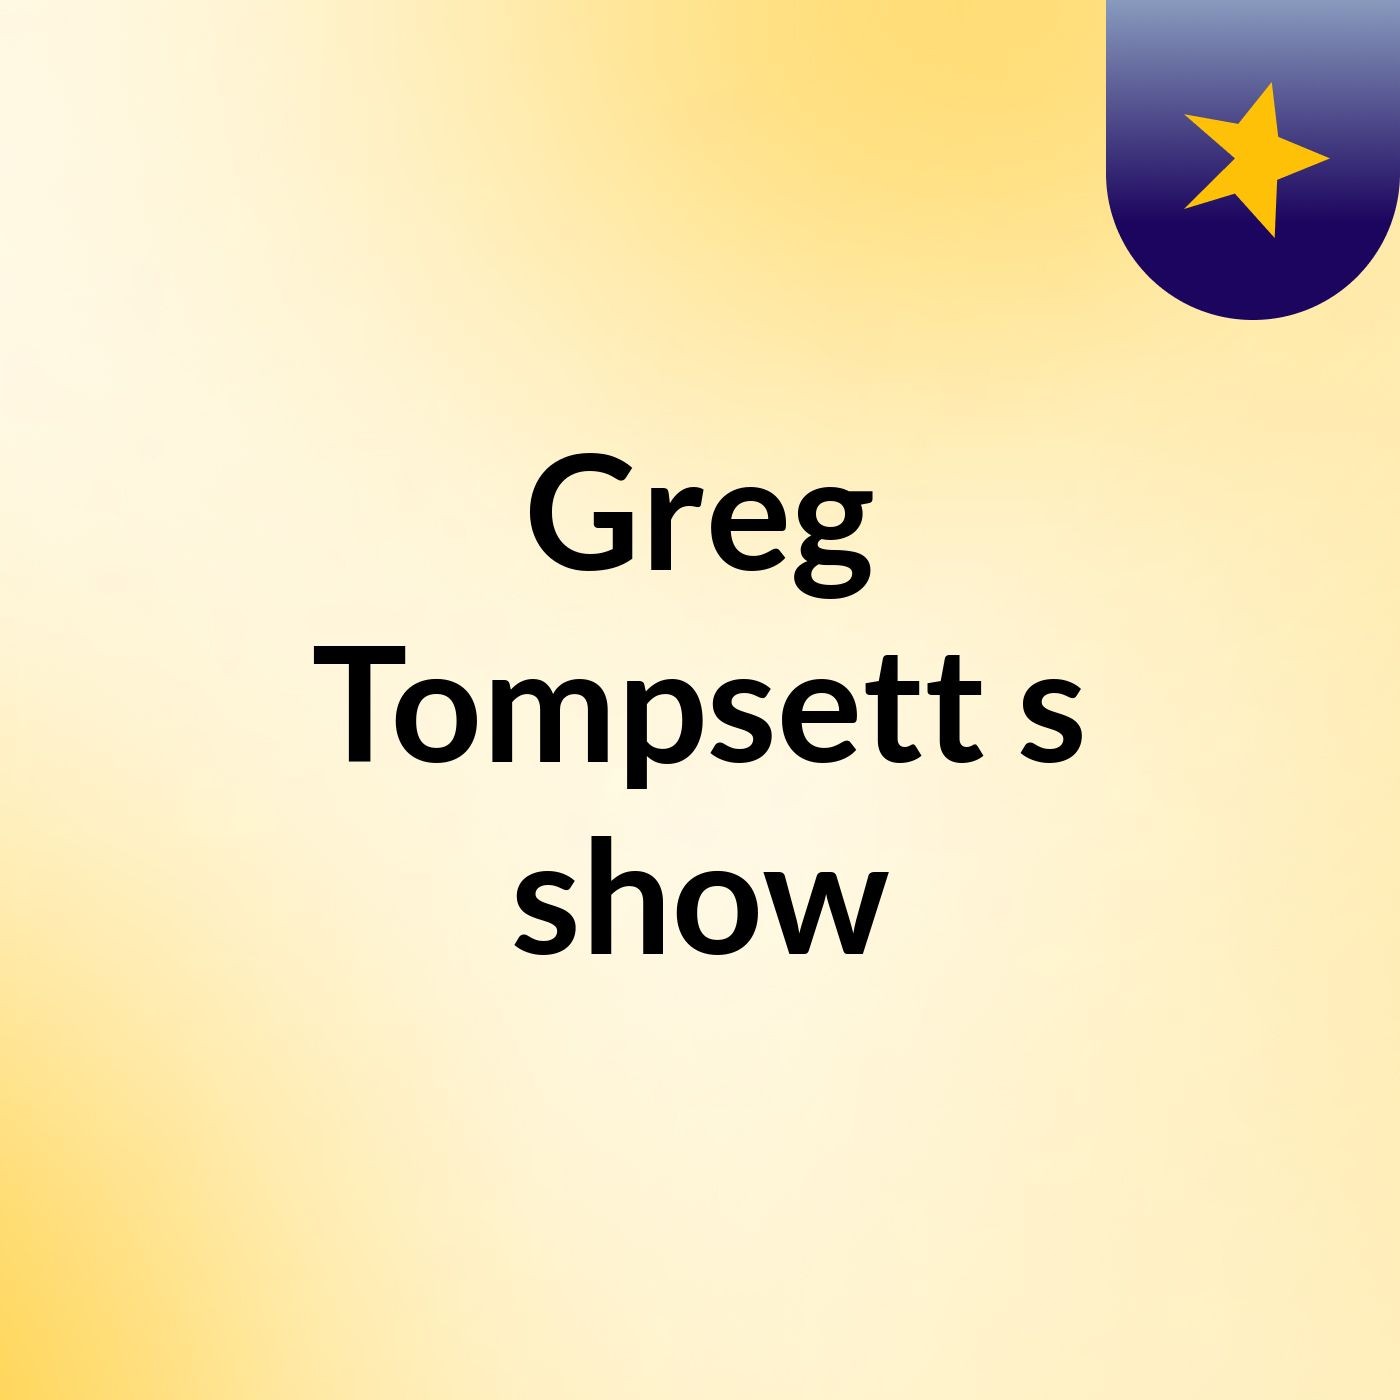 Greg Tompsett's show